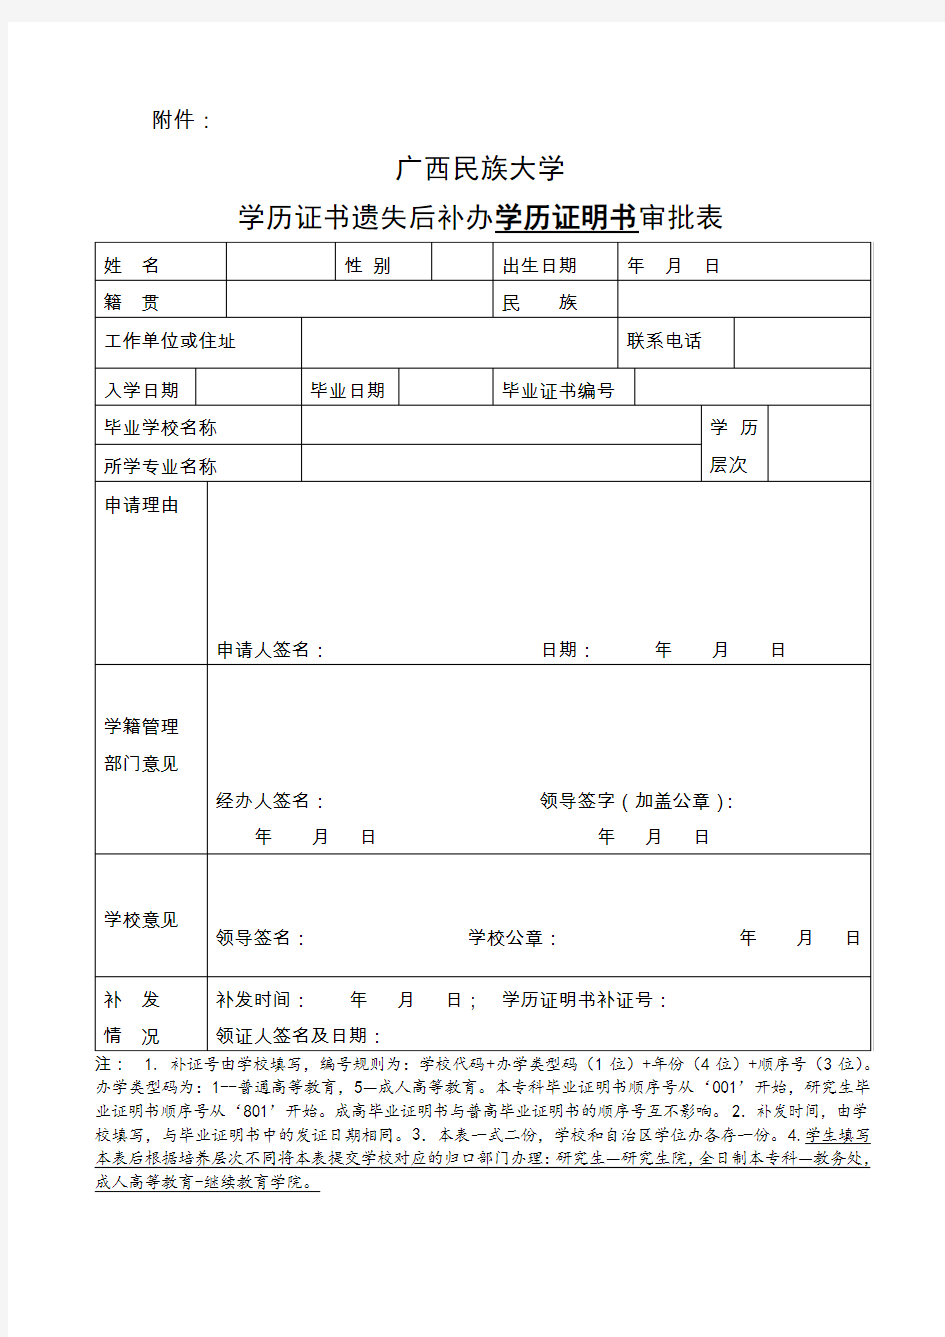 广西民族大学学历证明书申请程序